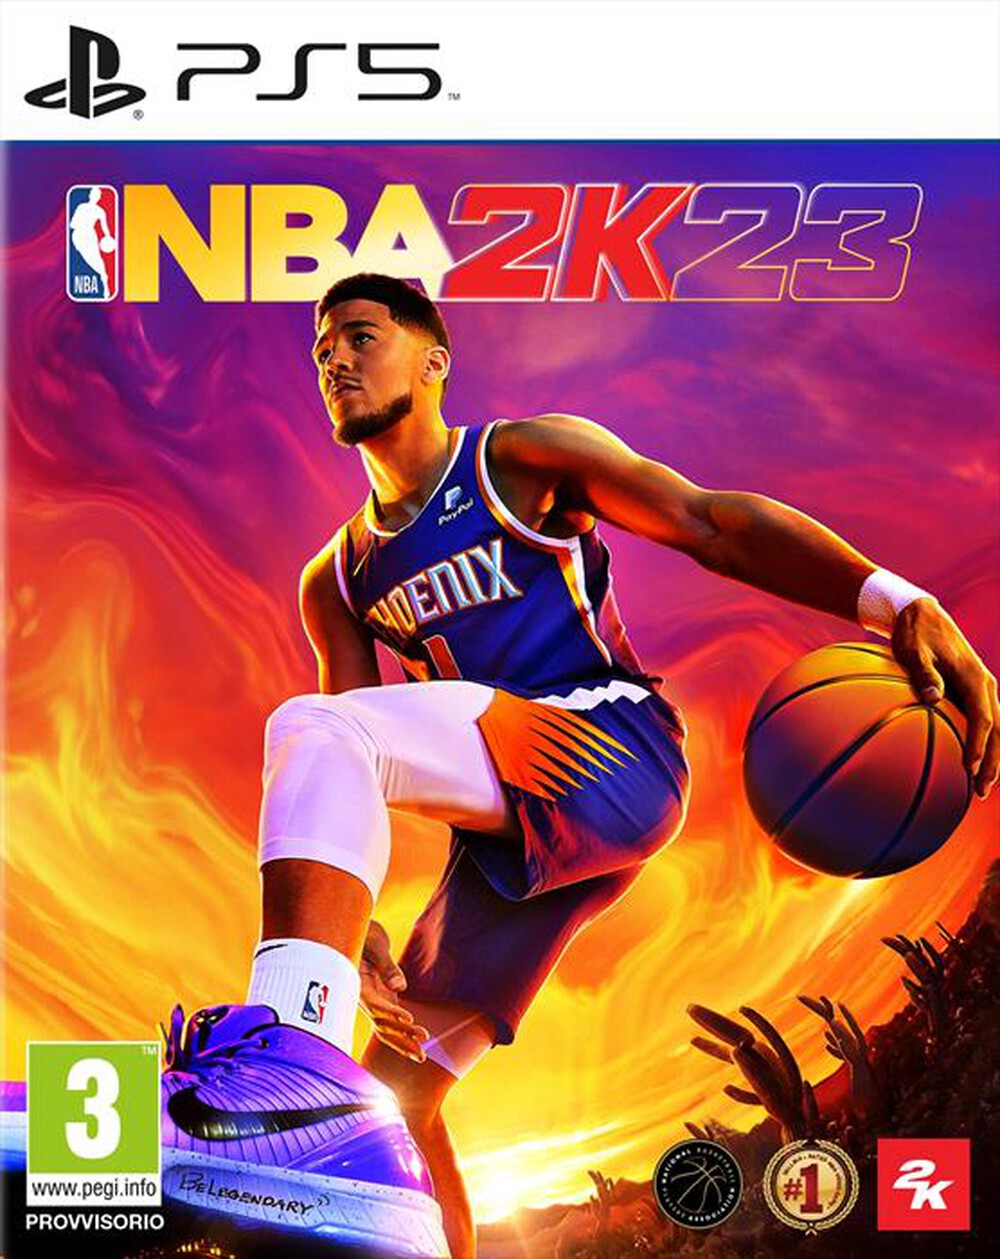 "2K GAMES - NBA 2K23 PS5"